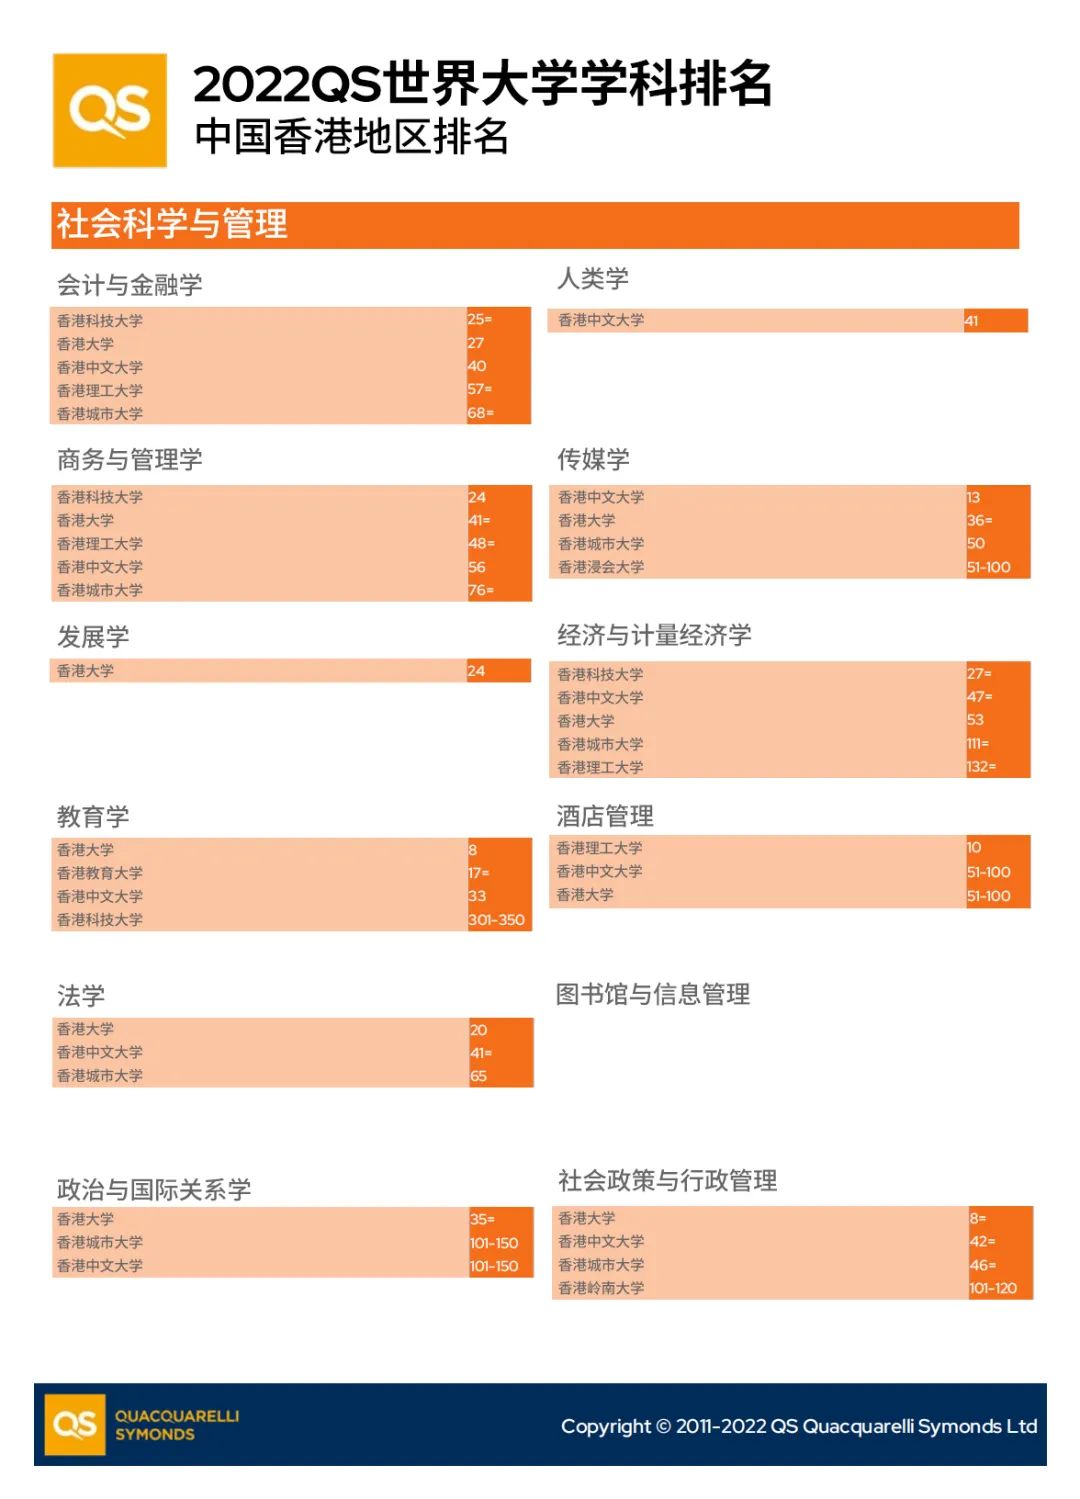 「香港留学攻略」盘点香港院校在最新QS排名中的学科表现